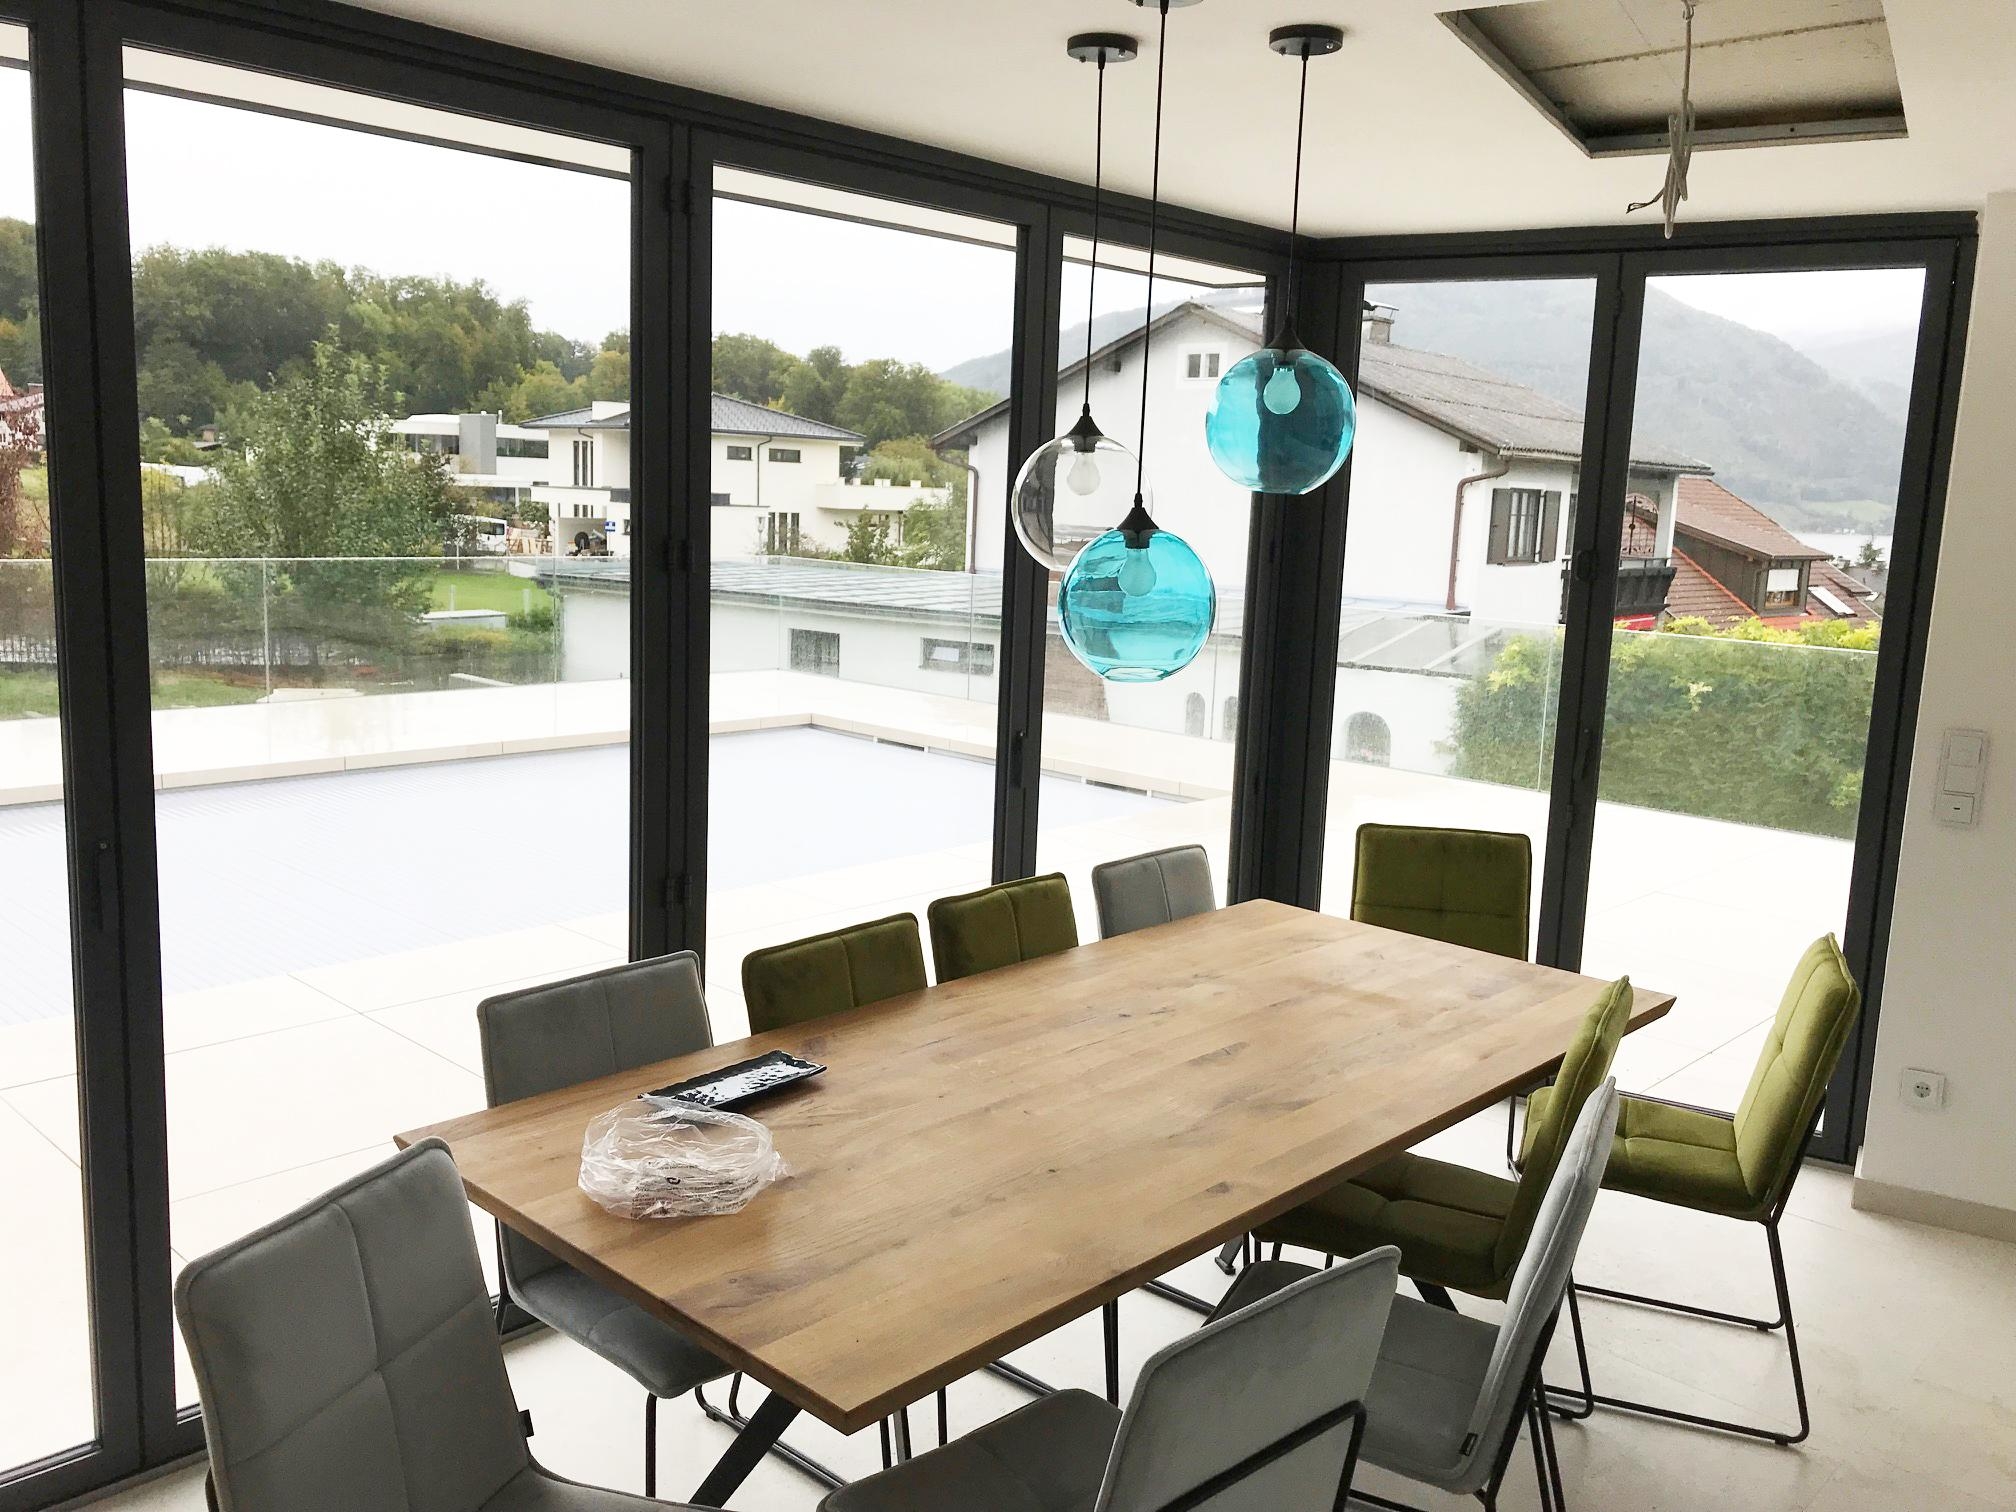 Ein neues Poolhaus in Oberösterreich - jetzt mit Faltwänden von Fenster-Schmidinger! Das nennen wir #SchöneAussichten